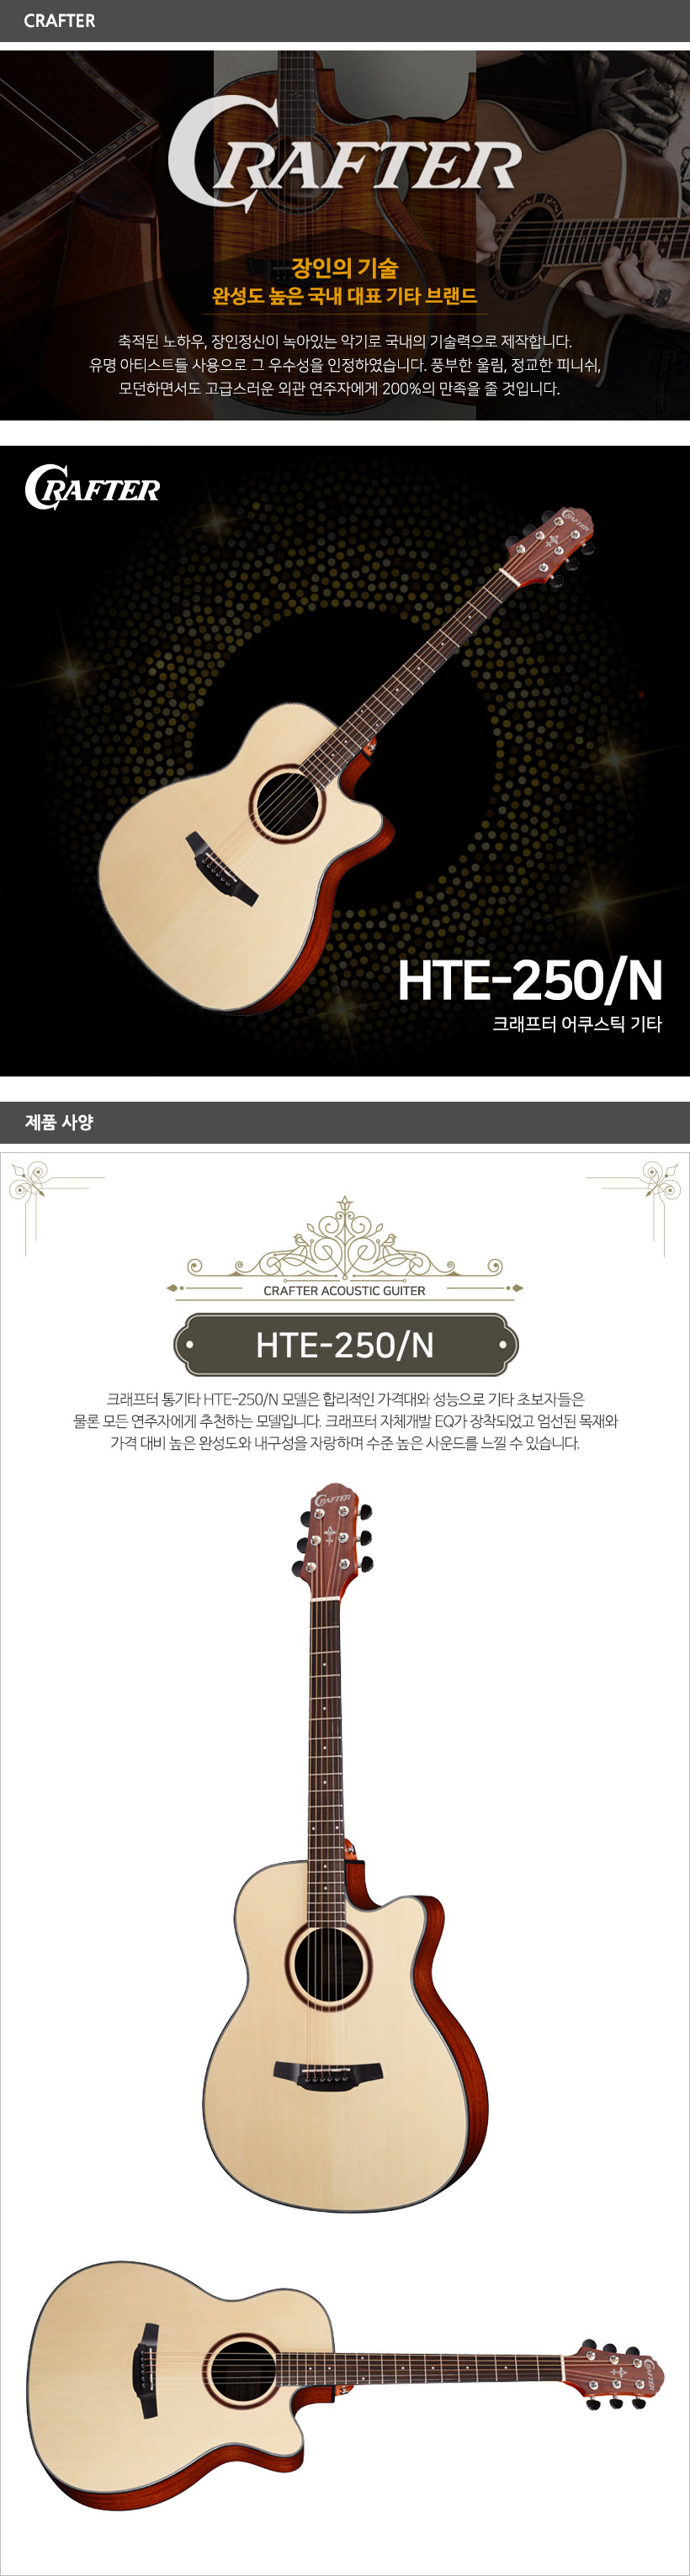 HTE-250 N 제품 사양